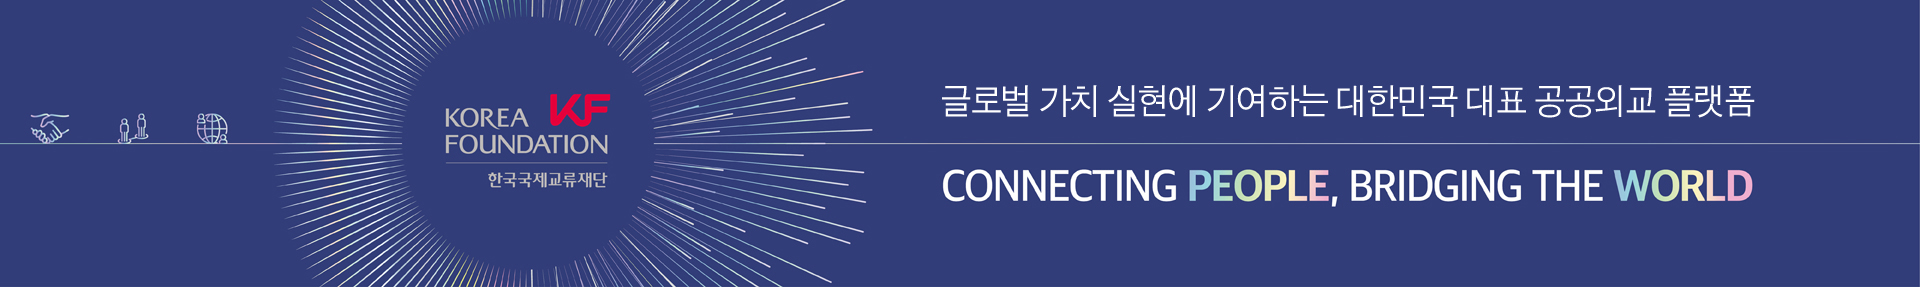 글로벌 가치 실현에 기여하는 대한민국 대표 공공외교 플랫폼, CONNECTING PEOPLE, BRIDGING THE WORLD